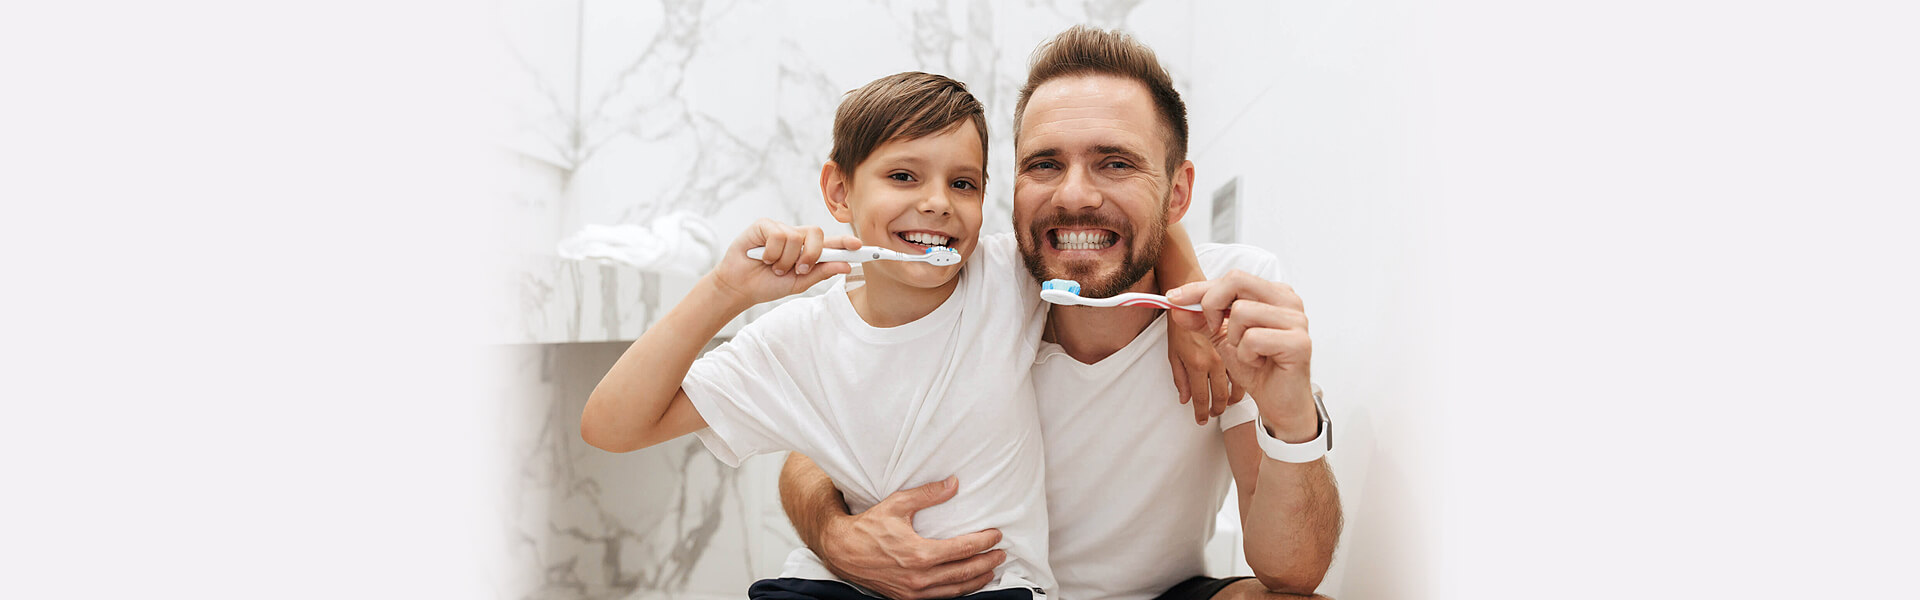 Best Ways to Whiten Teeth at Home